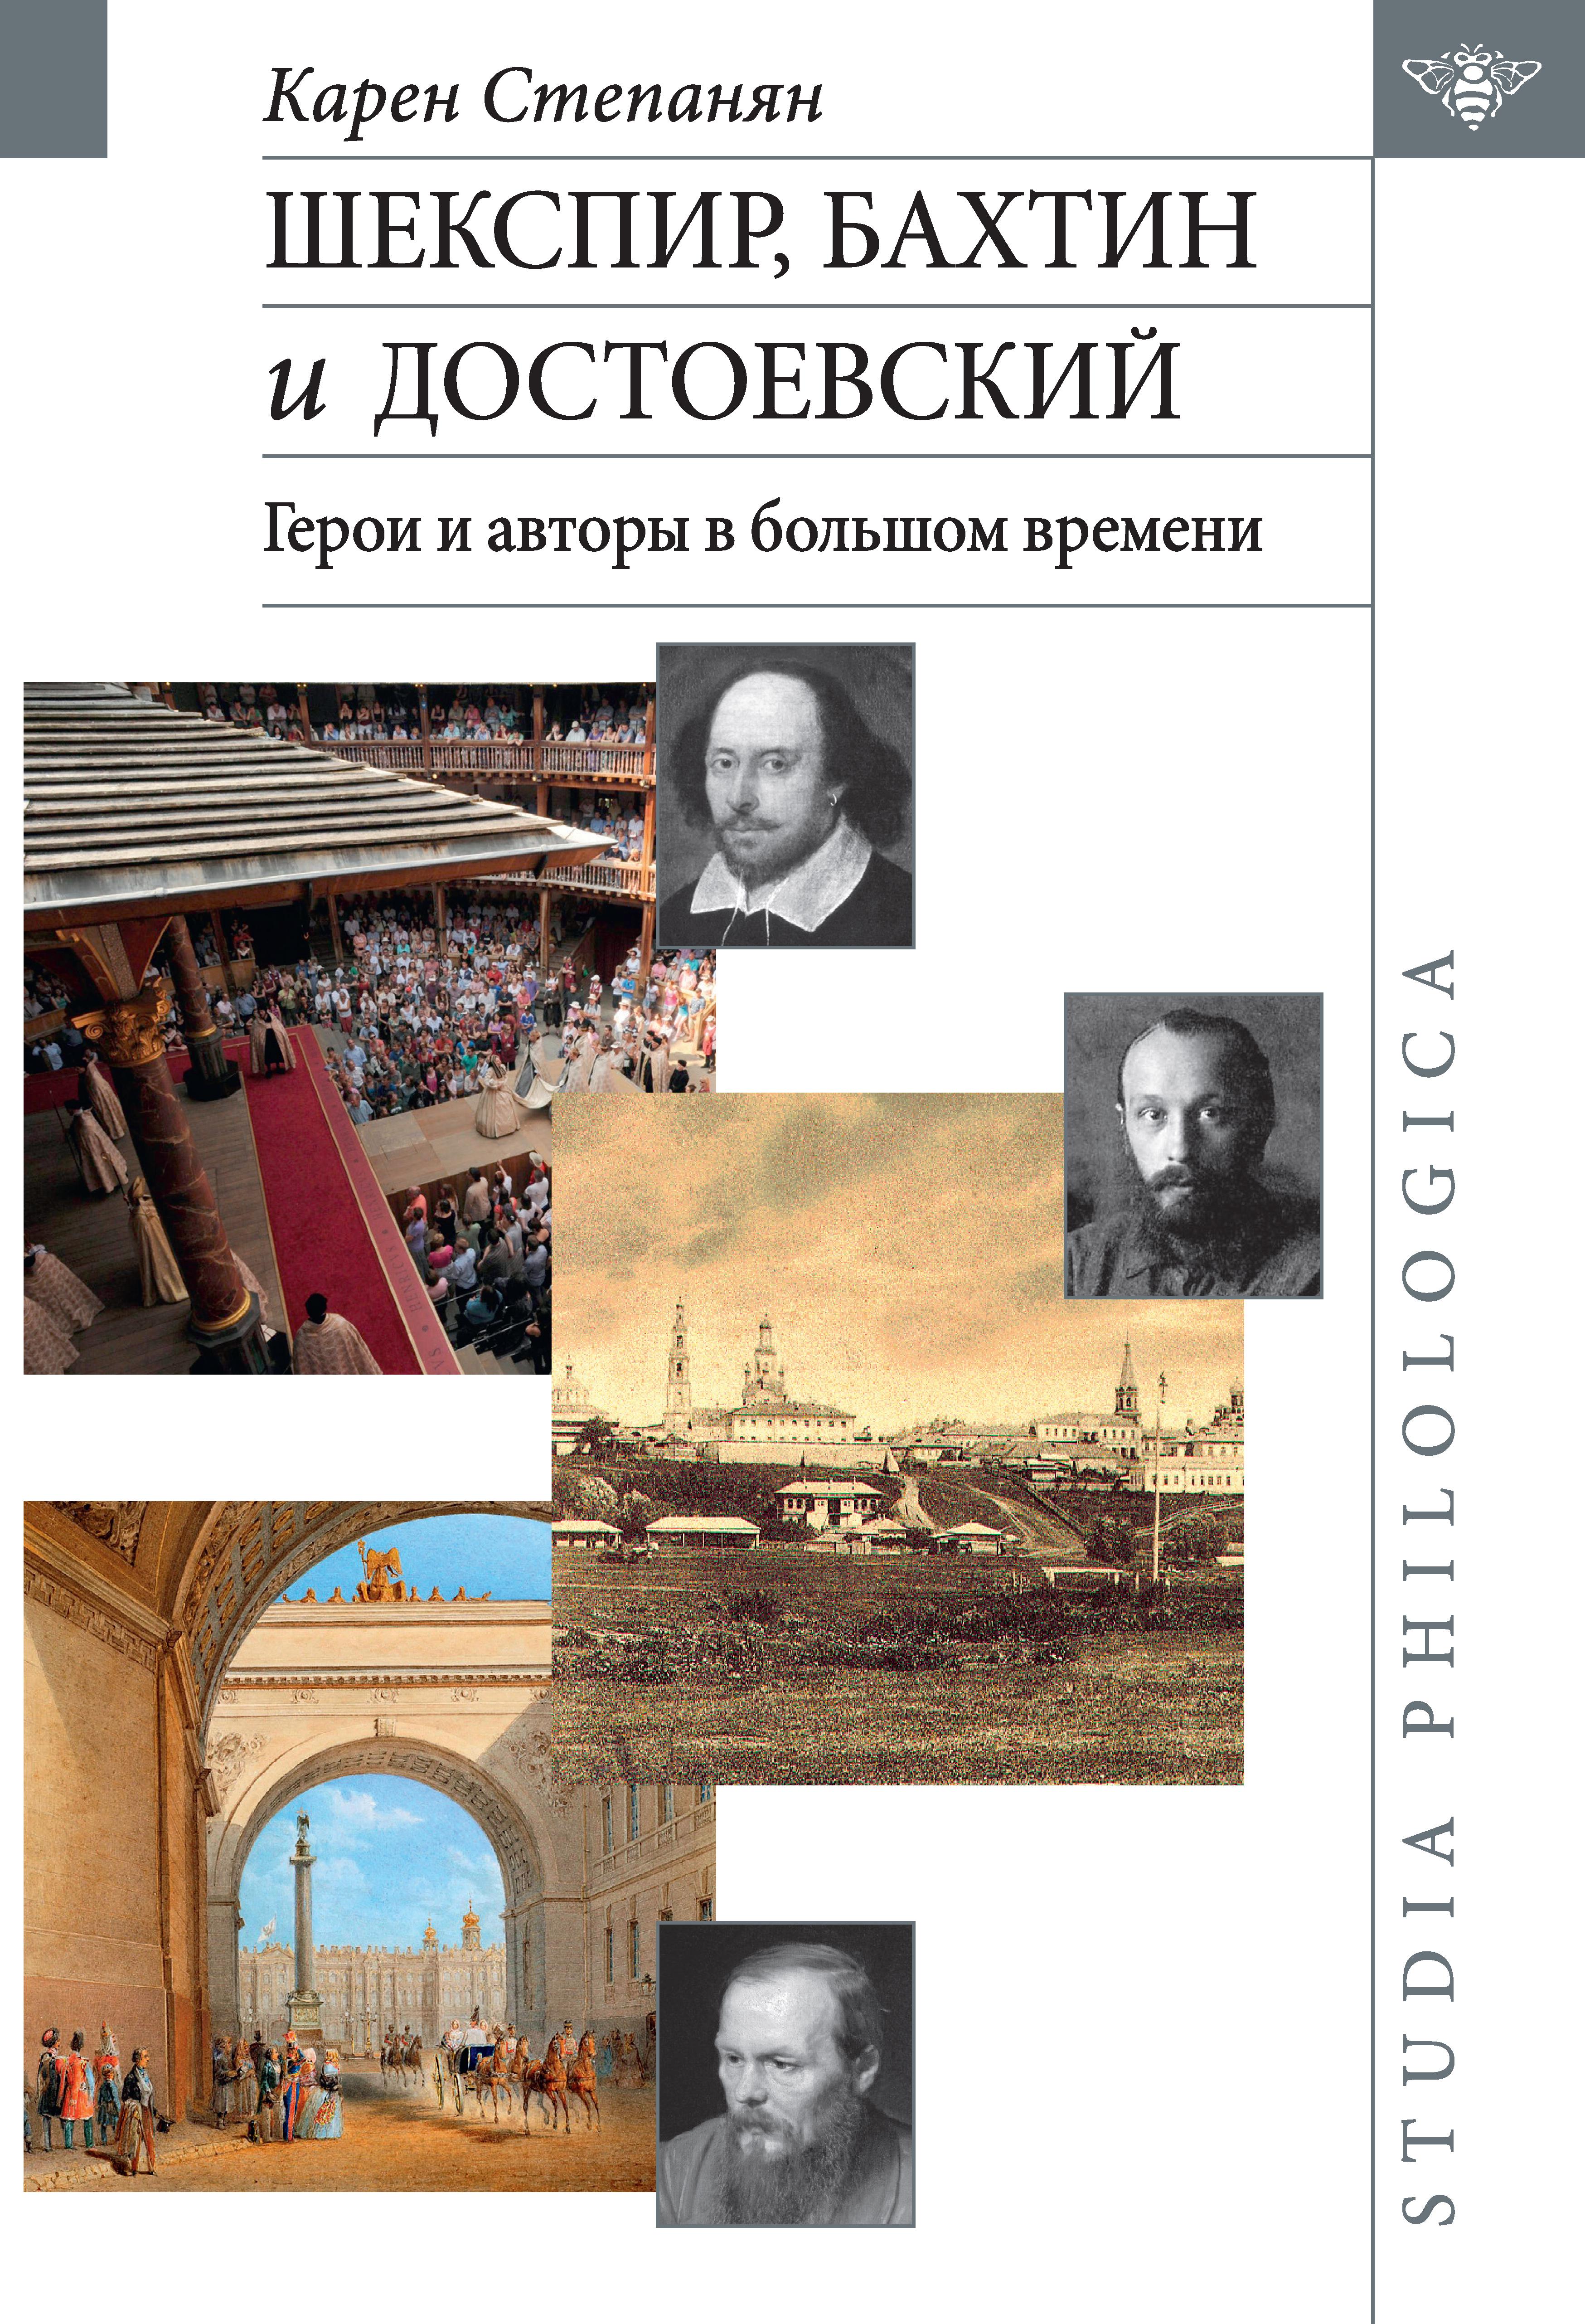 Обложка Шекспир, Бахтин и Достоевский: герои и авторы в большом времени.